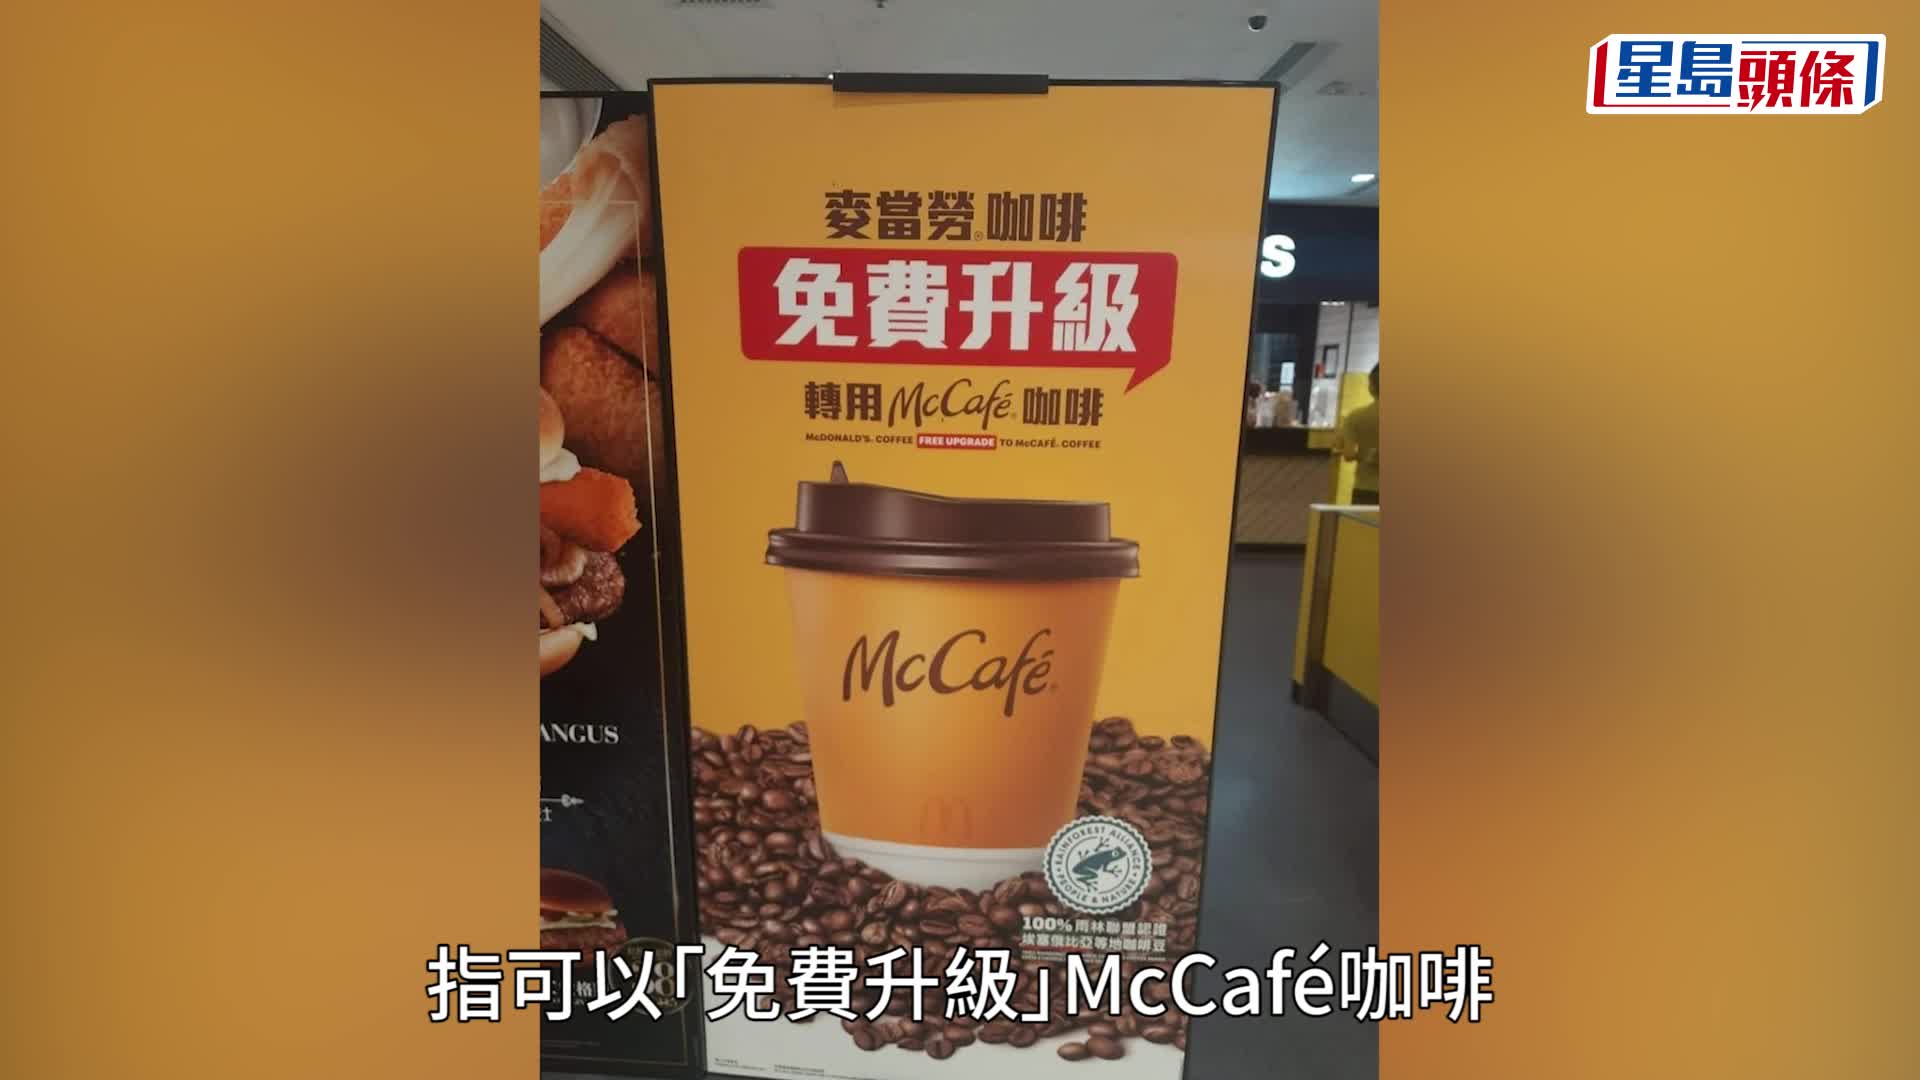 麥當勞在《頭條日報》頭版刊登廣告，又在於社交平台發布消息，指停止供應所有咖啡。